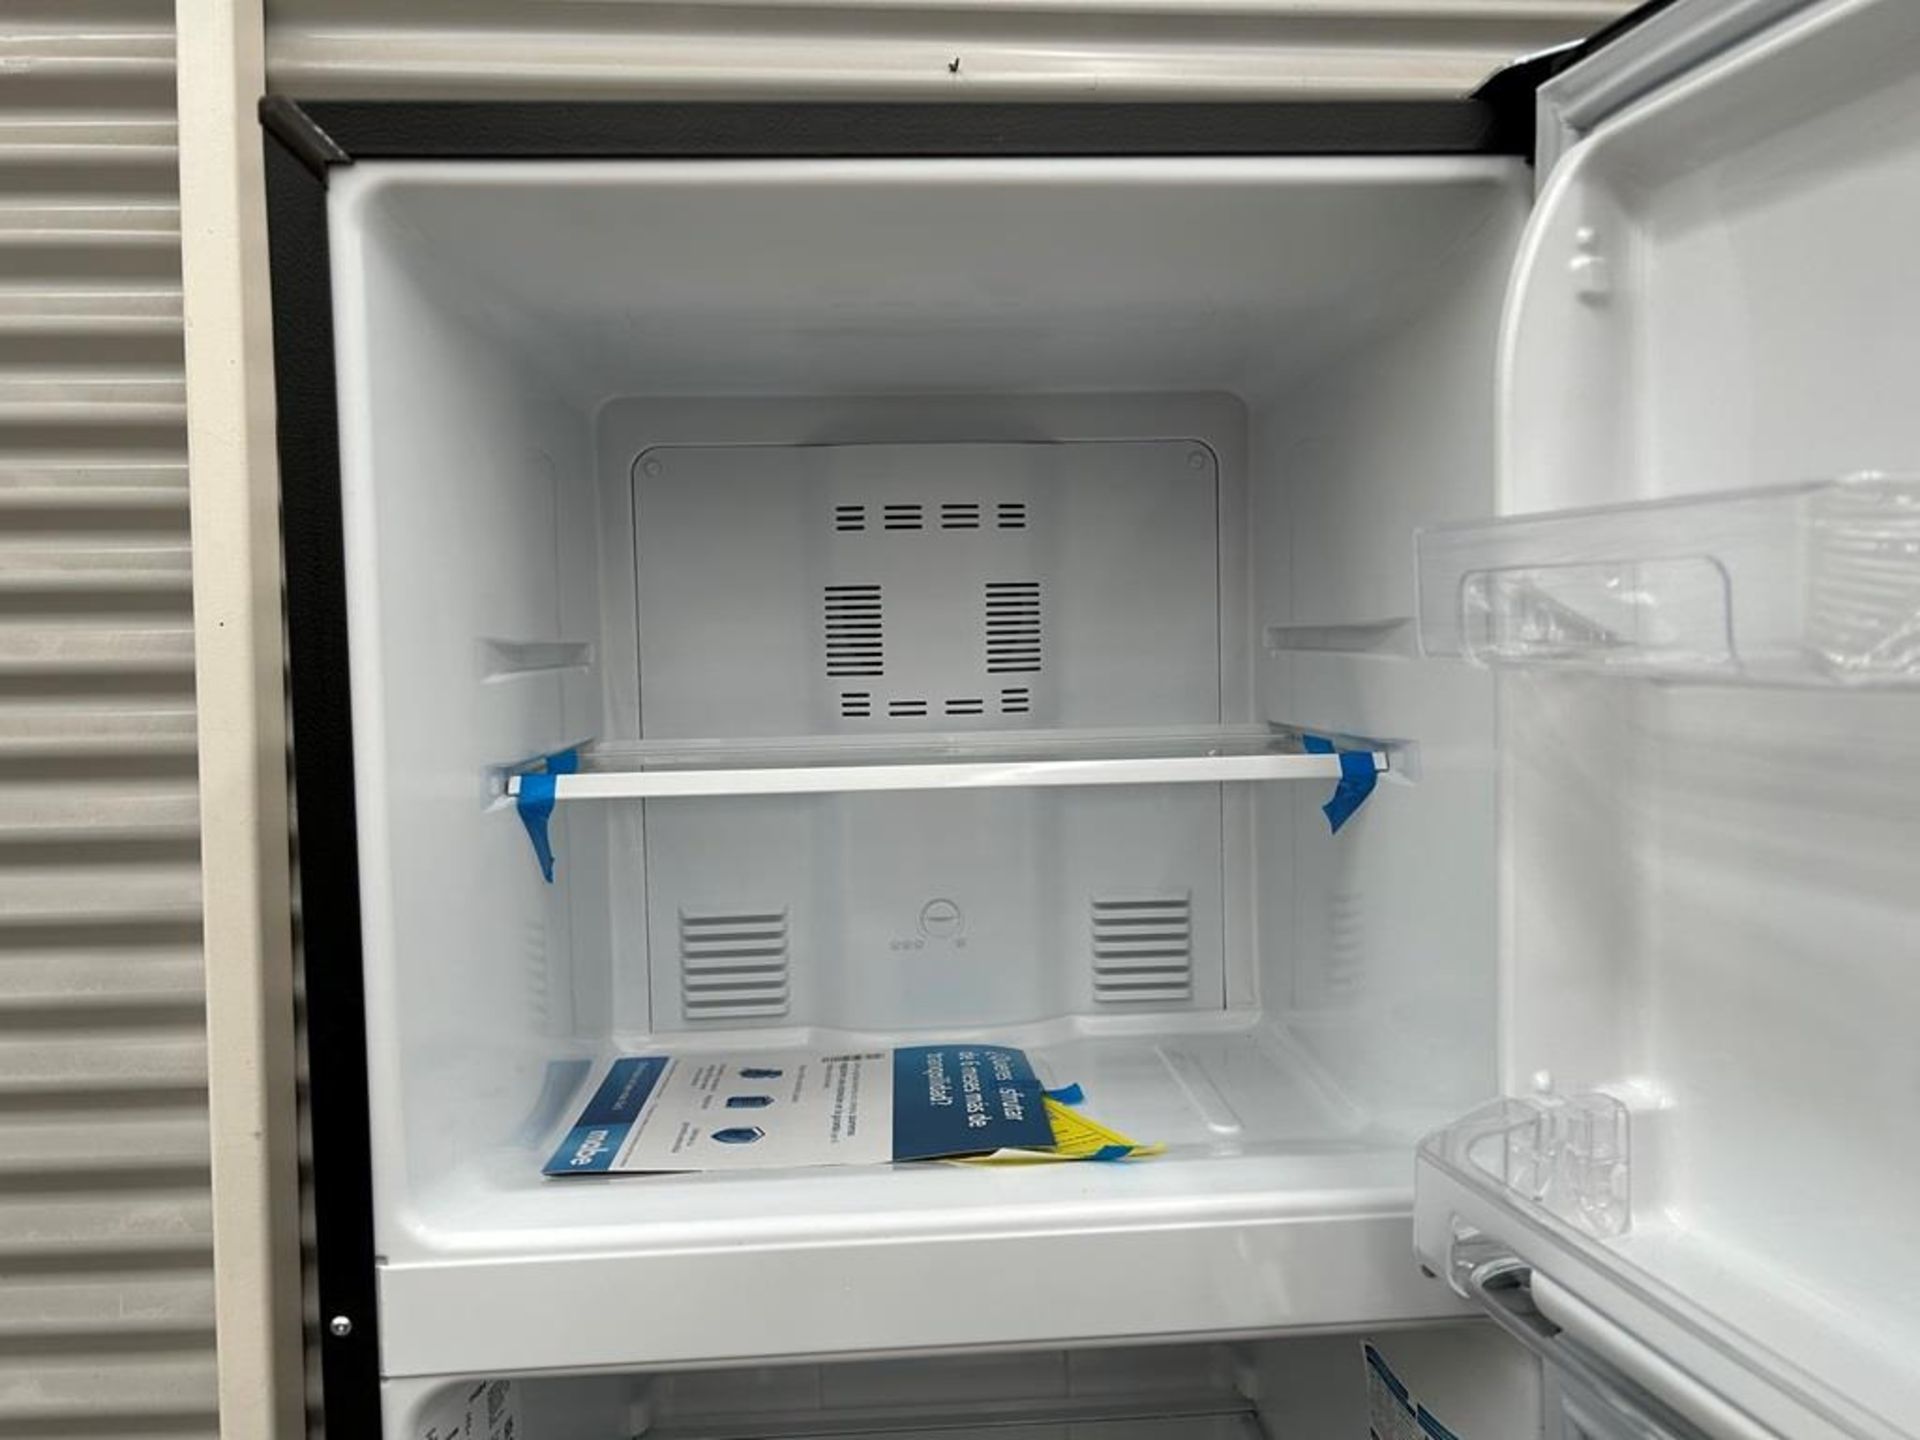 Lote de 2 refrigeradores contiene: 1 Refrigerador con dispensador de agua Marca MABE, Modelo RMA300 - Image 12 of 18